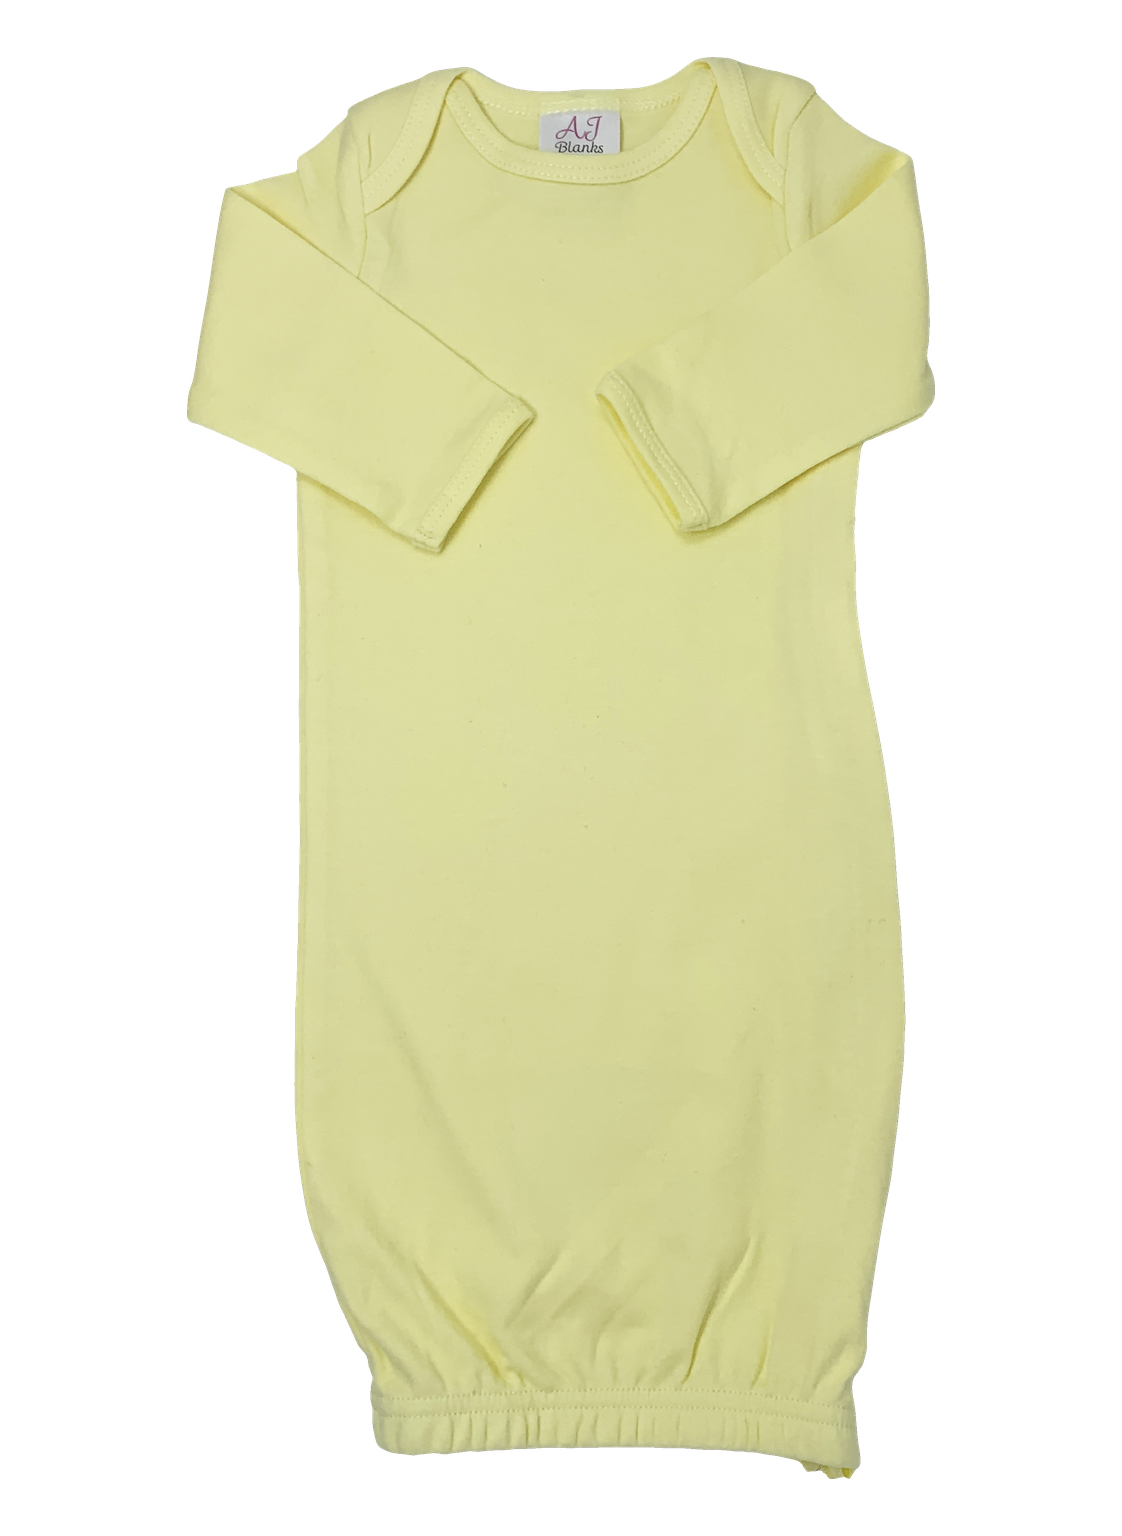 Unisex Baby Gown with Hidden Zipper